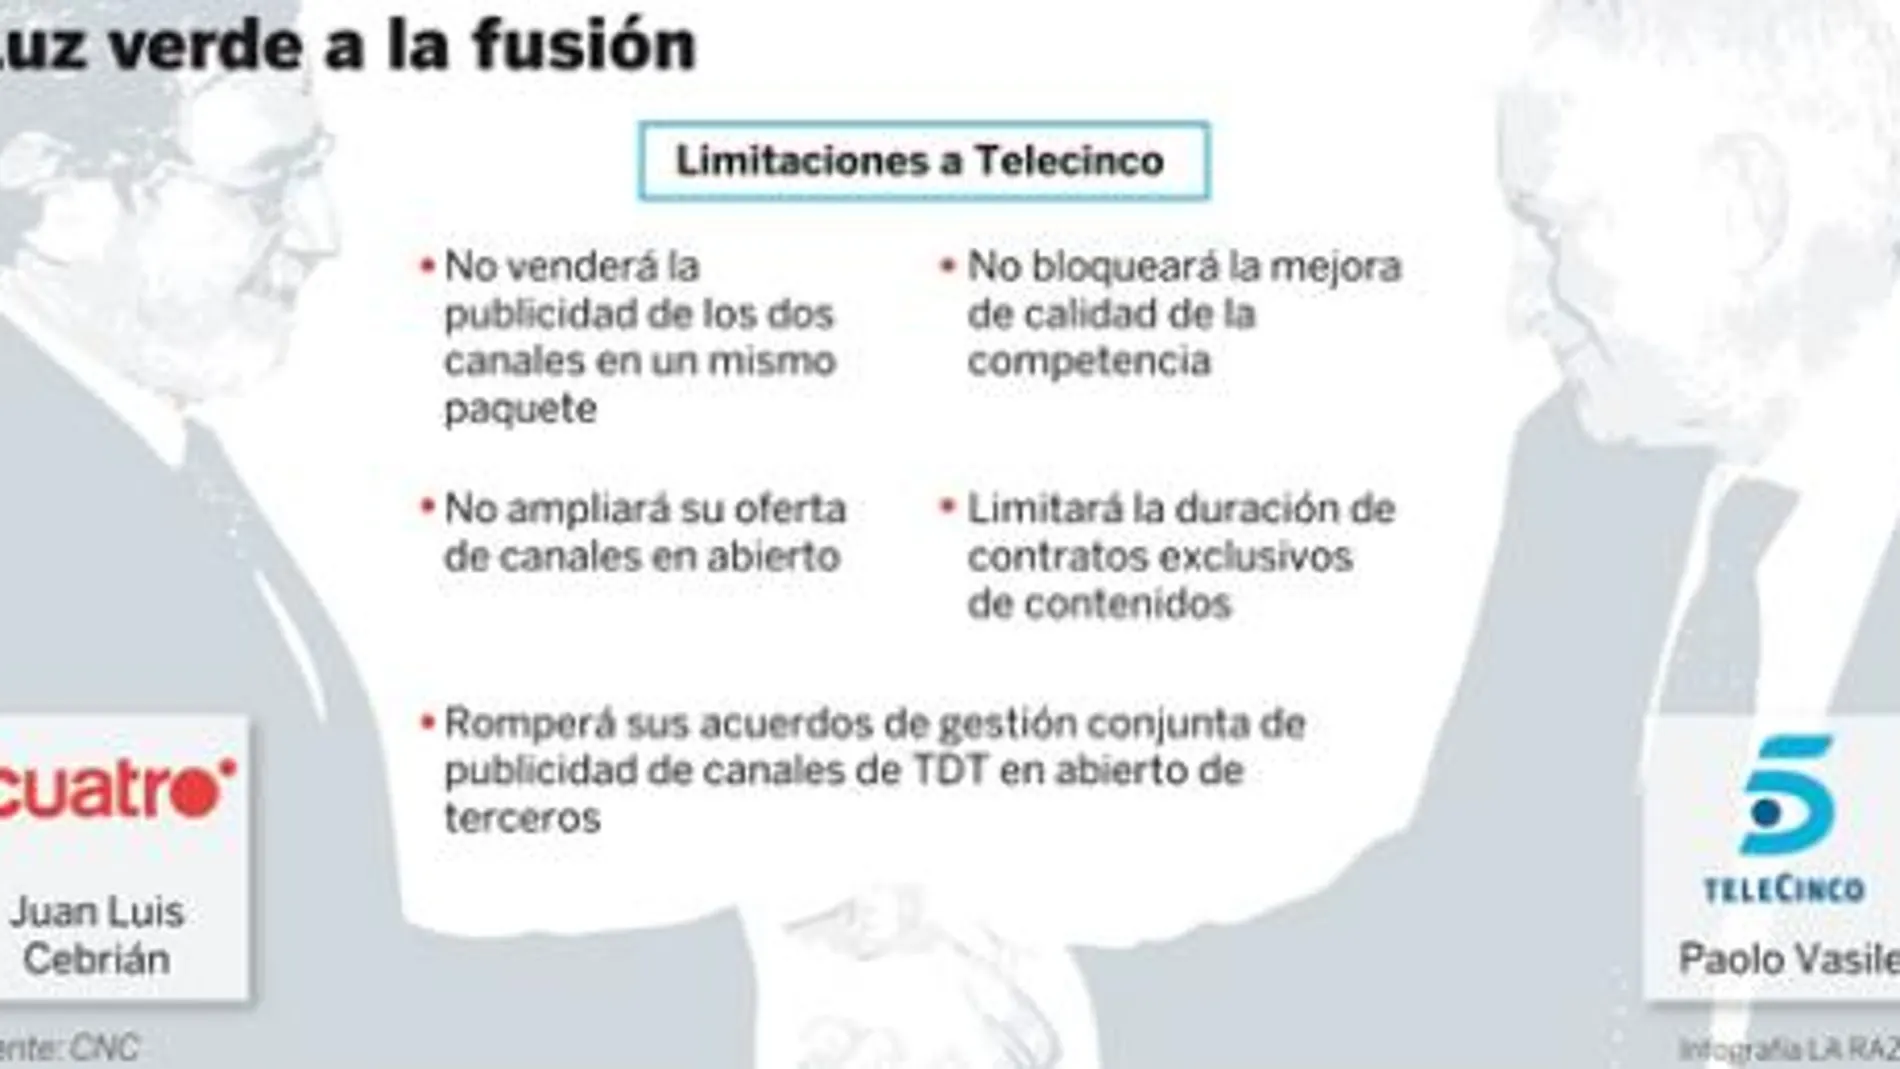 Competencia autoriza la fusión Telecinco-Cuatro con límites